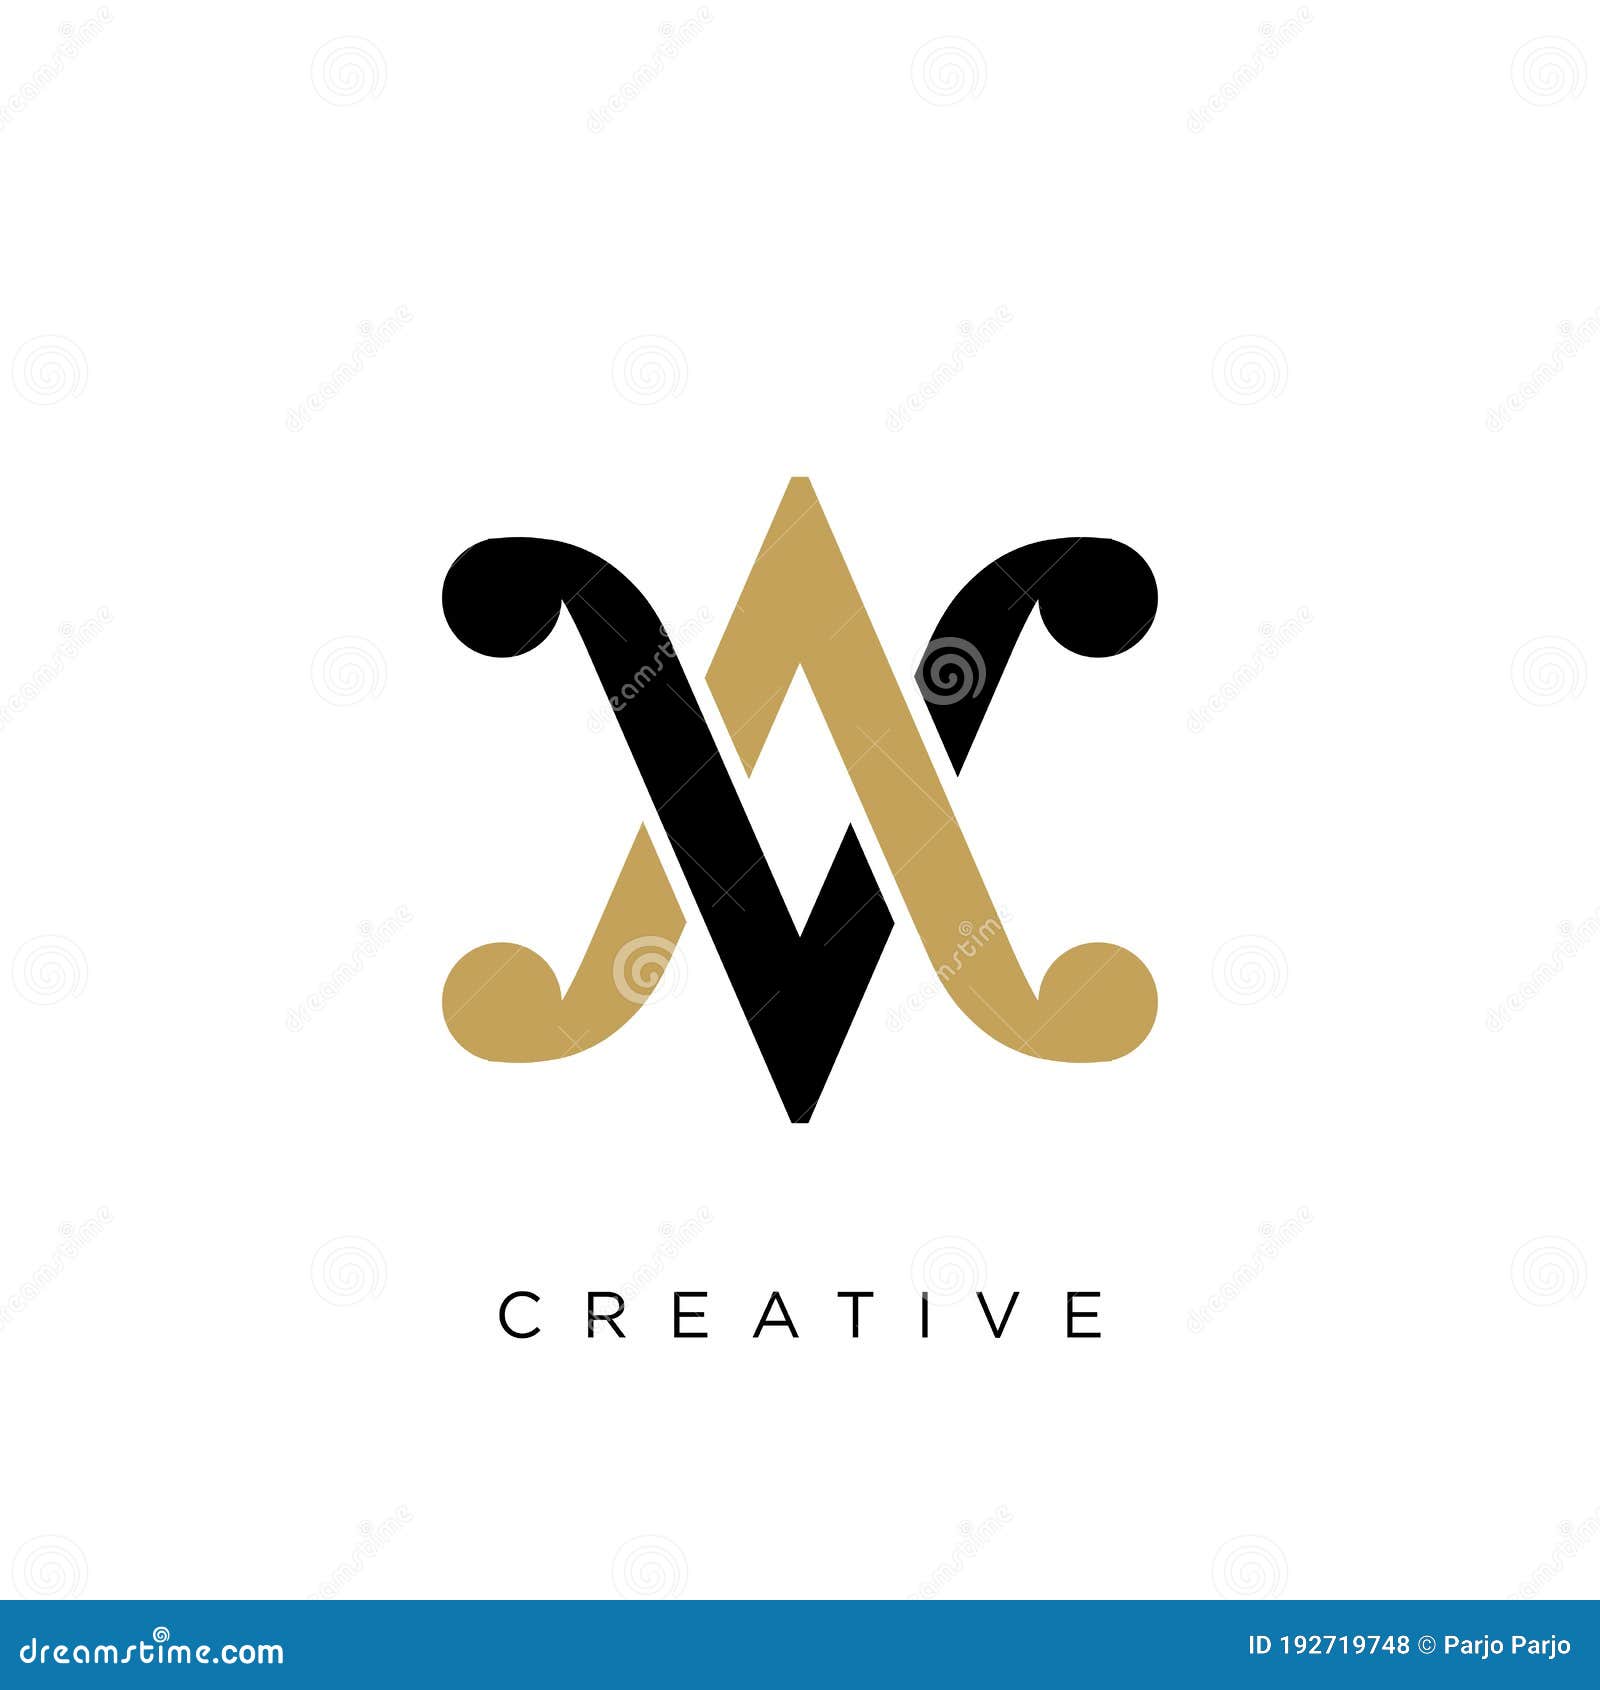 av va luxury logo   icon for company